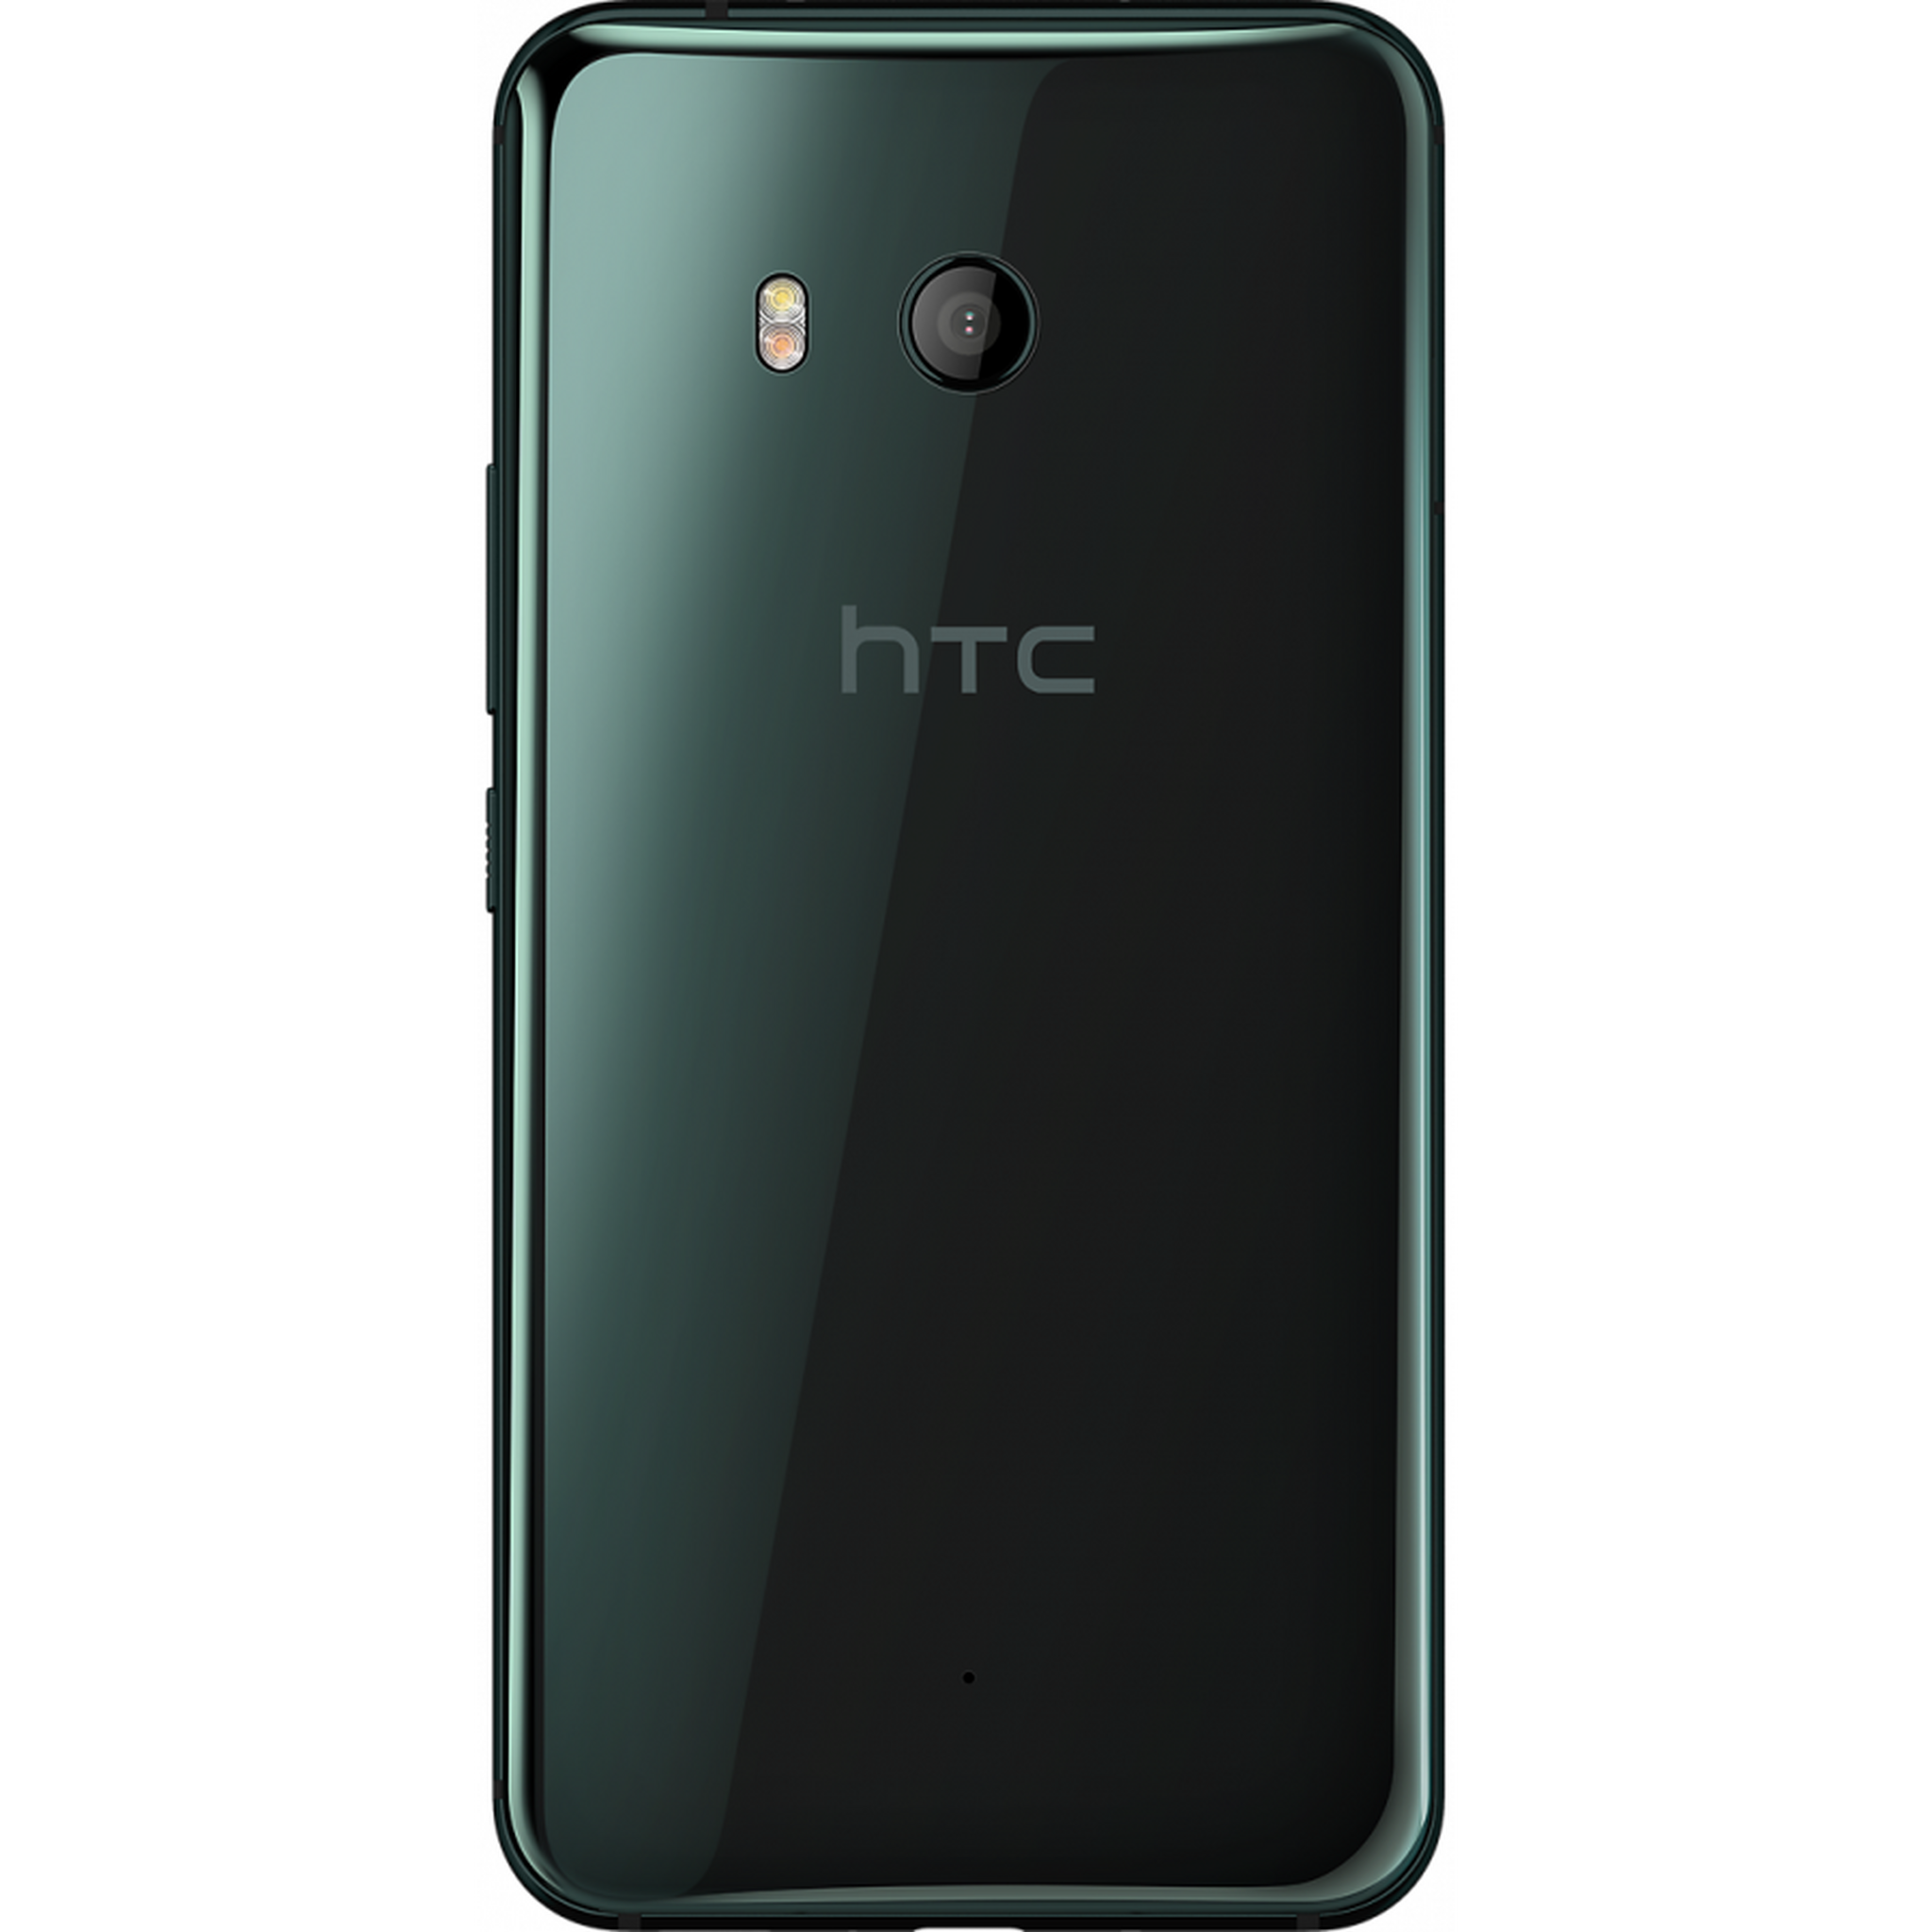 HTC HTC U11 128GB Phone - Black